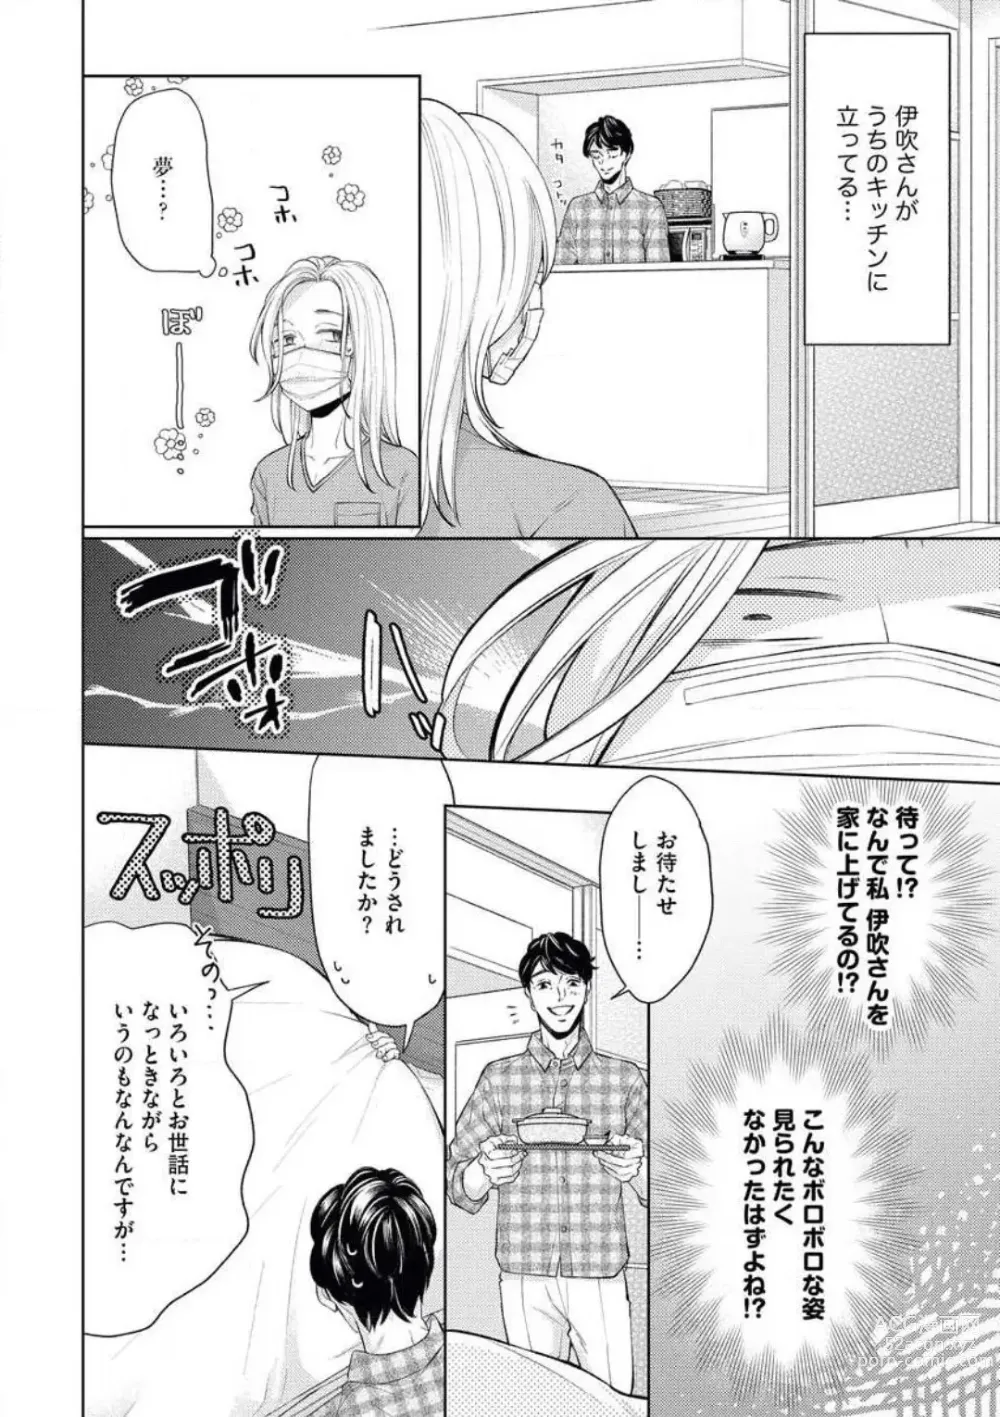 Page 12 of manga Anata o Kudasai!